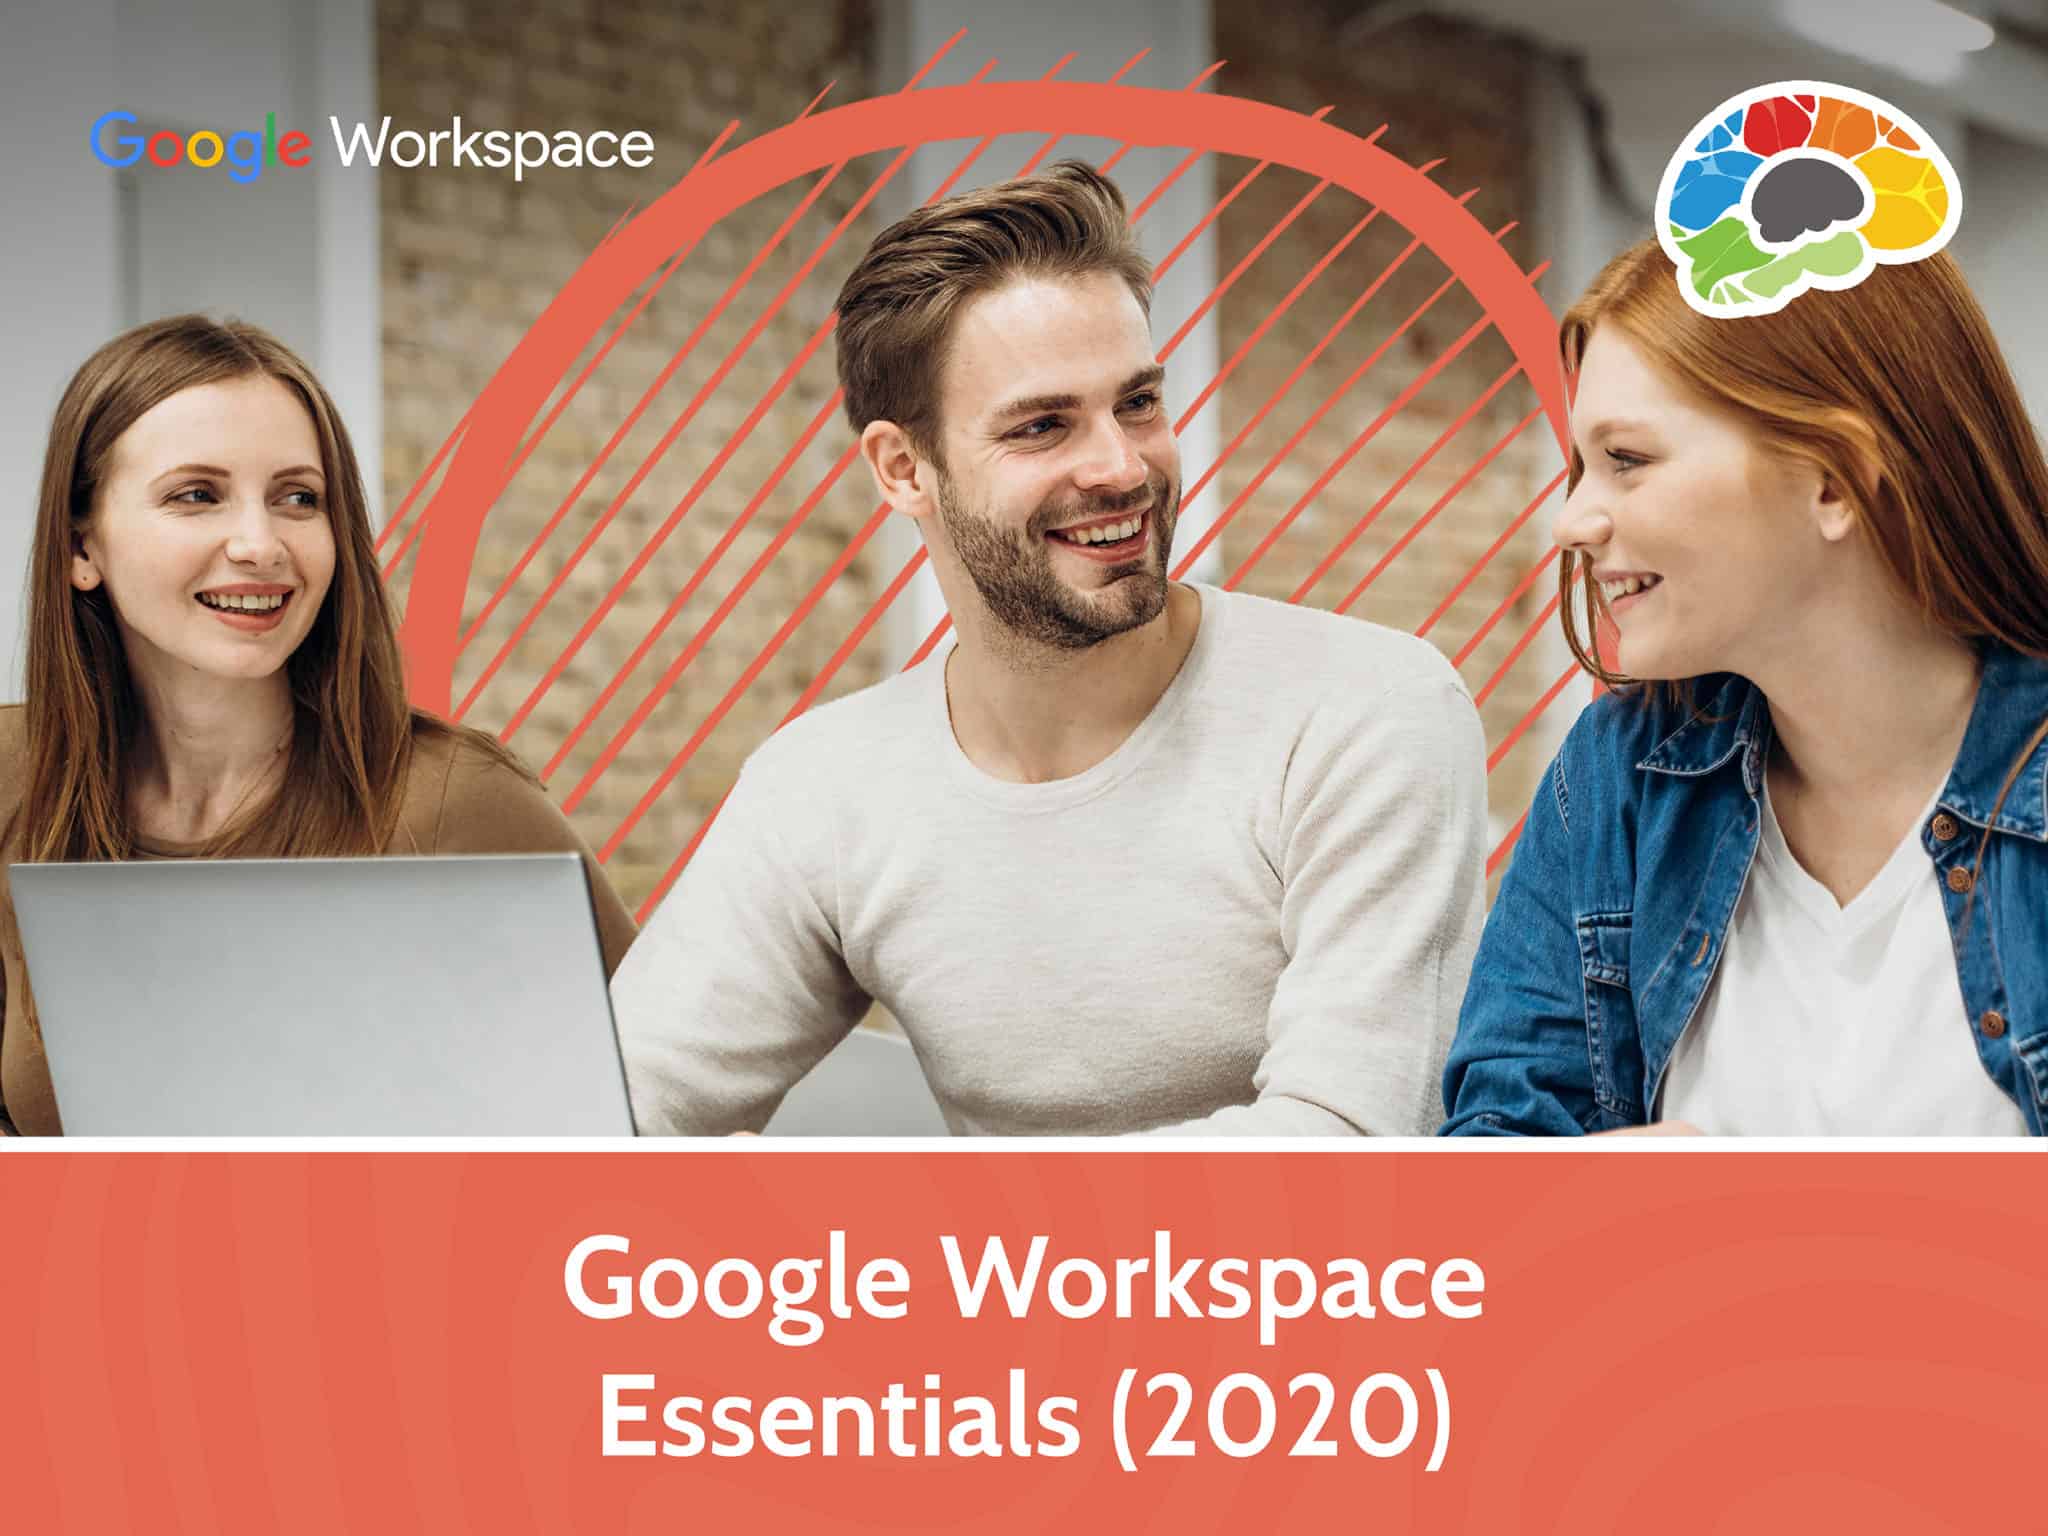 Google Workspace Essentials 2020 scaled